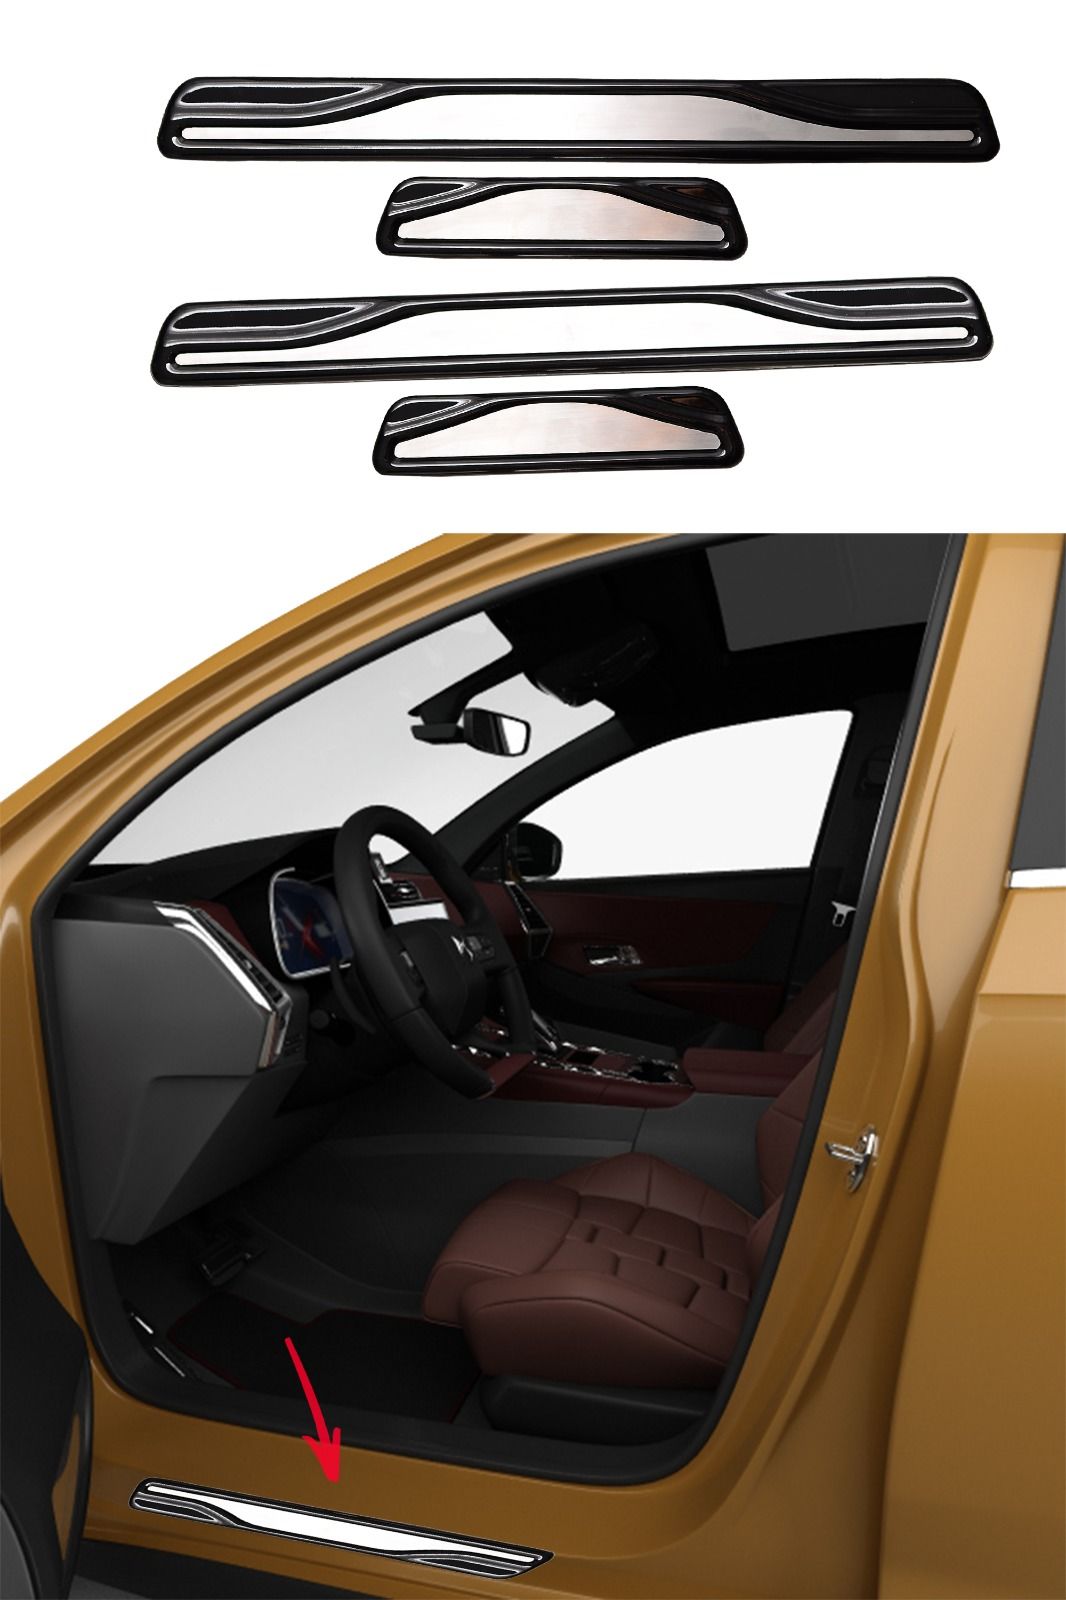 Subaru Impreza 4 HB Krom Kapı Eşik Koruması  2016 Üzeri 4 Parça